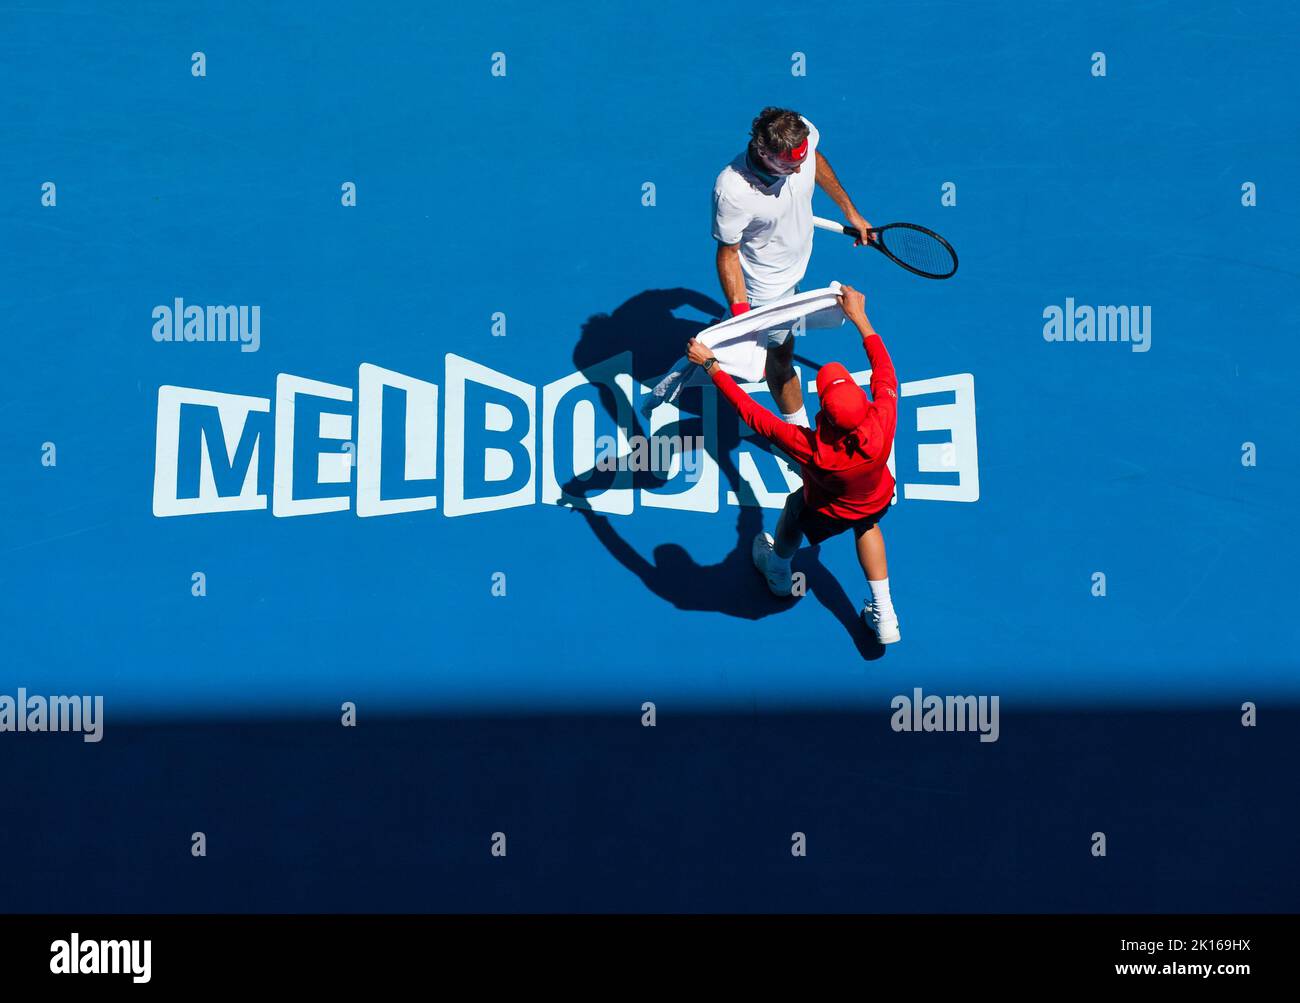 Roger Federer (SUI) toma una toalla durante un descanso en juego en el Día 2 de juego en el Abierto de Australia como las temperaturas se elevaron a 43C, 109,4F . Federer derrotó a J. Duckworth (AUS) 6-4, 6-4,6-2 en la primera ronda del Abierto de Australia 2014 en el Rod Laver Arena de Melbourne. Foto de stock